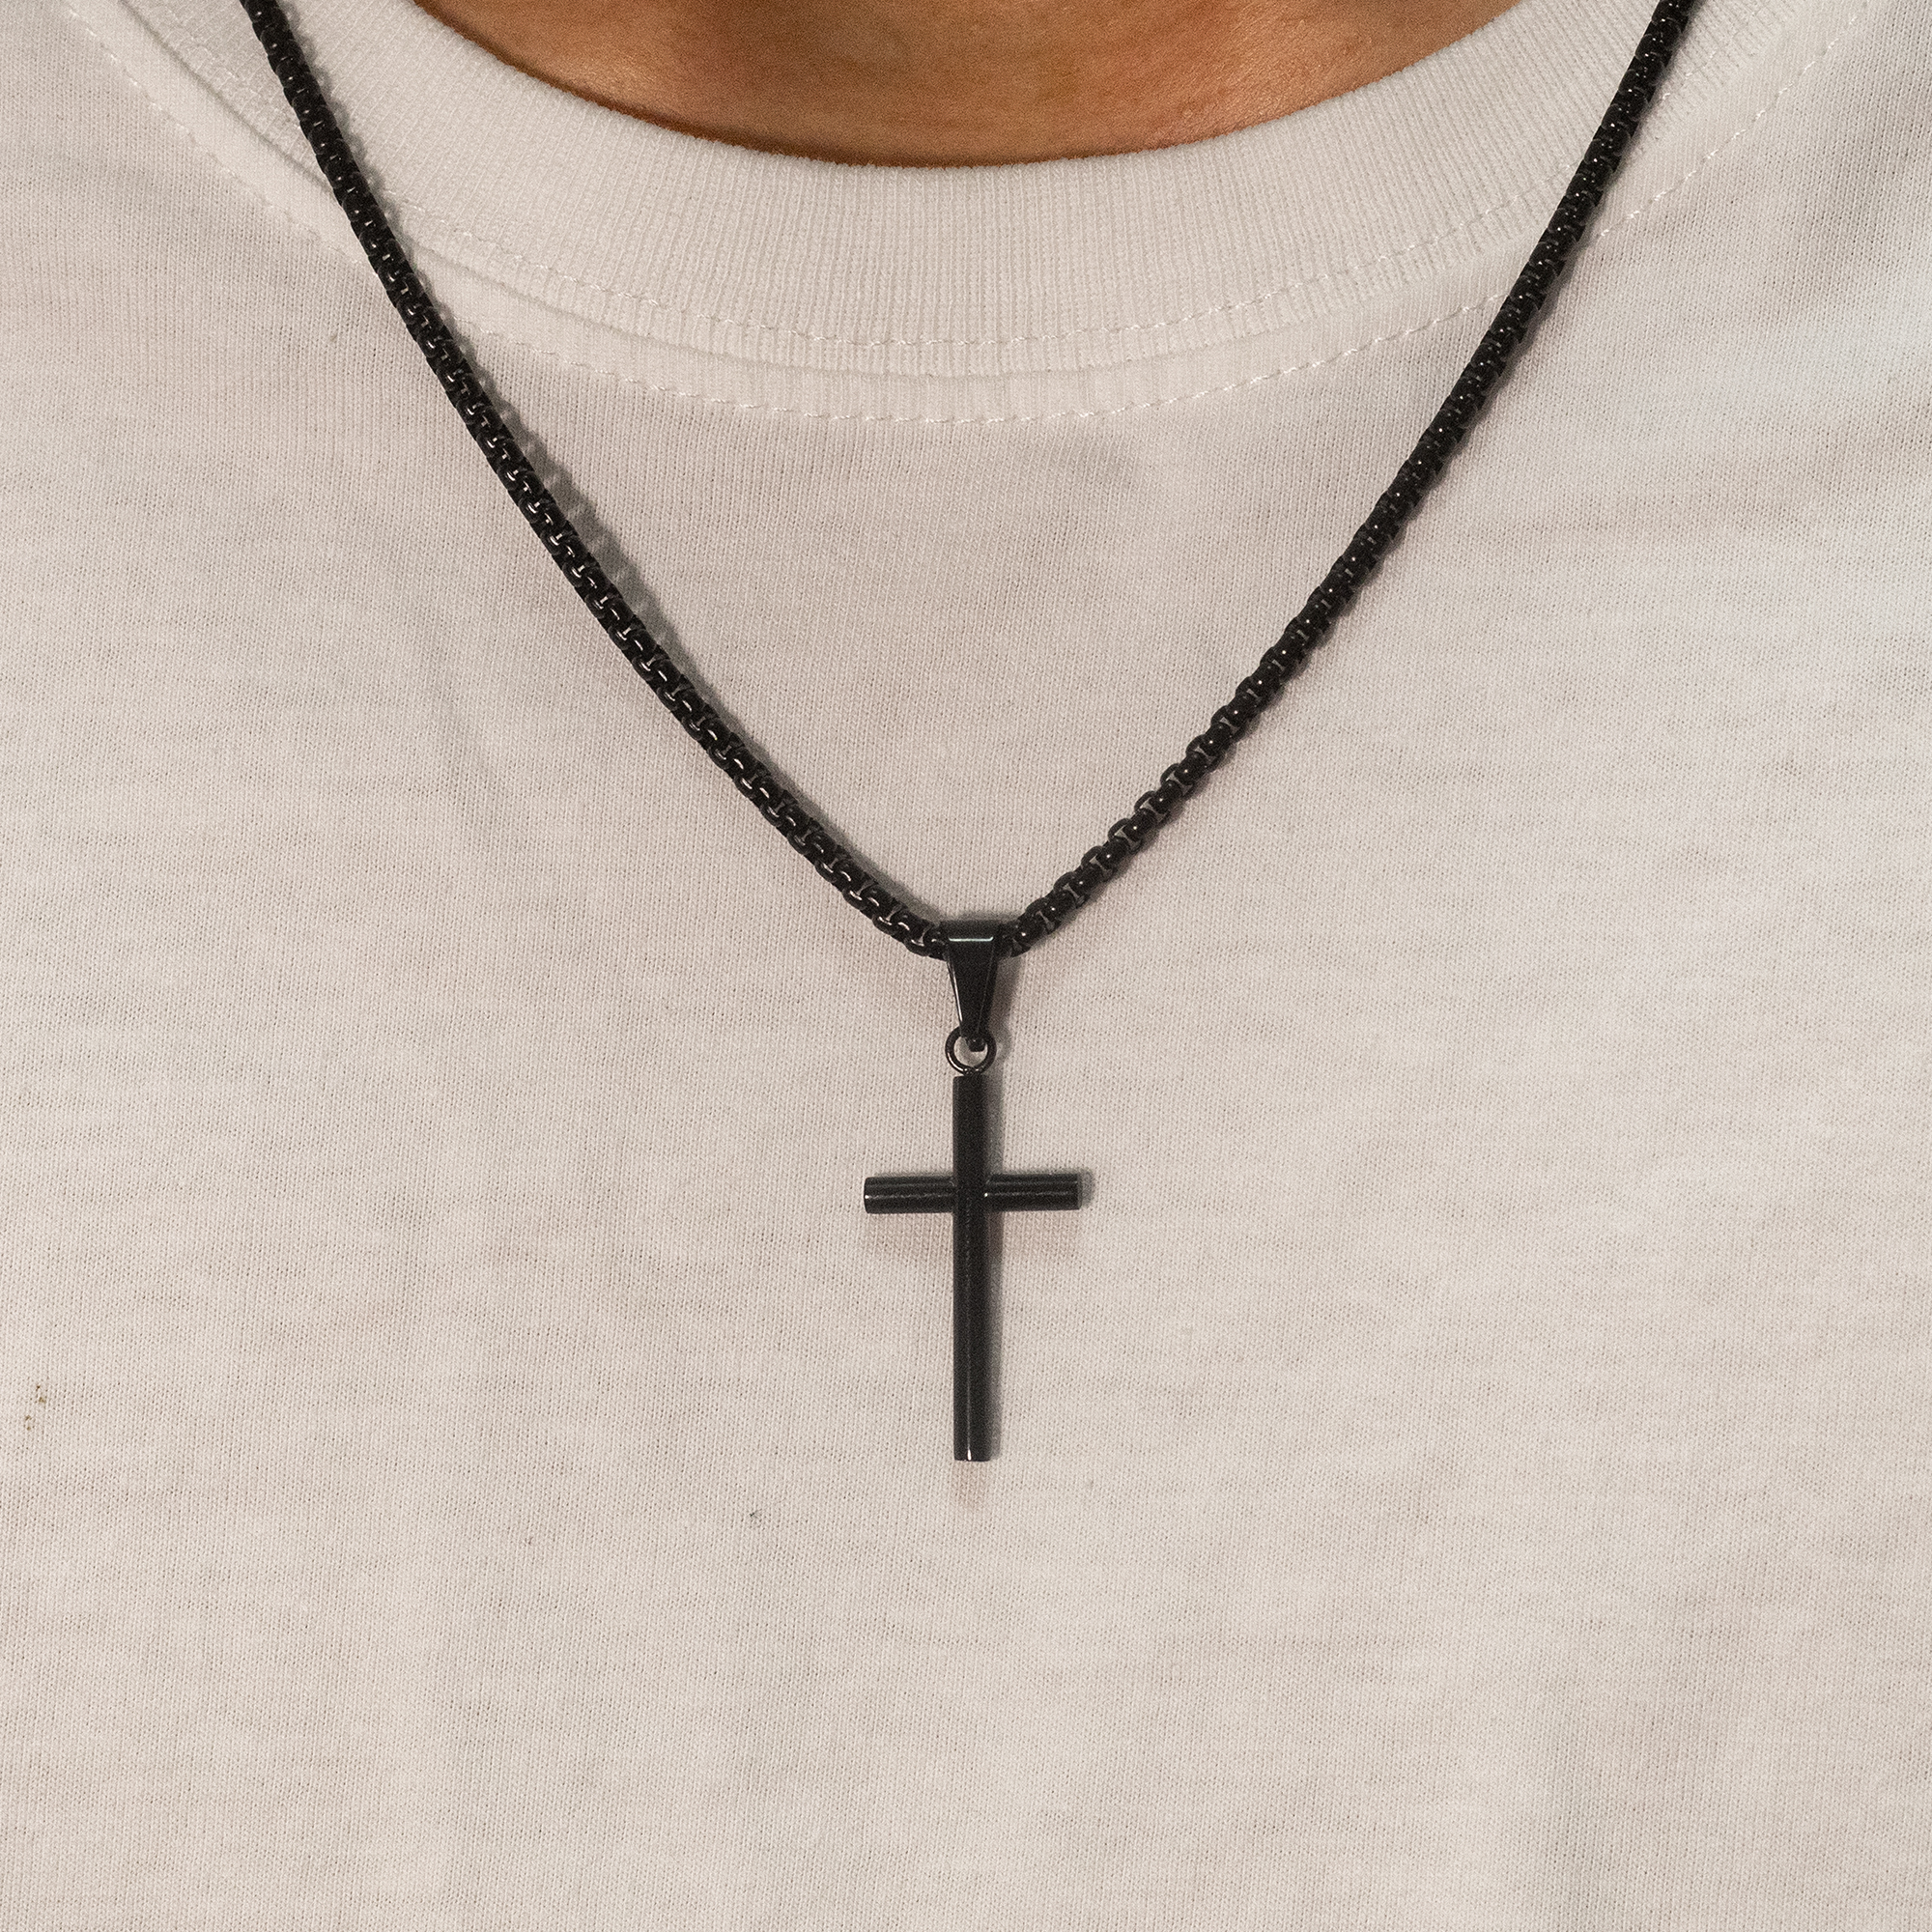 Men's Black Stainless Steel Polished Cross Pendant